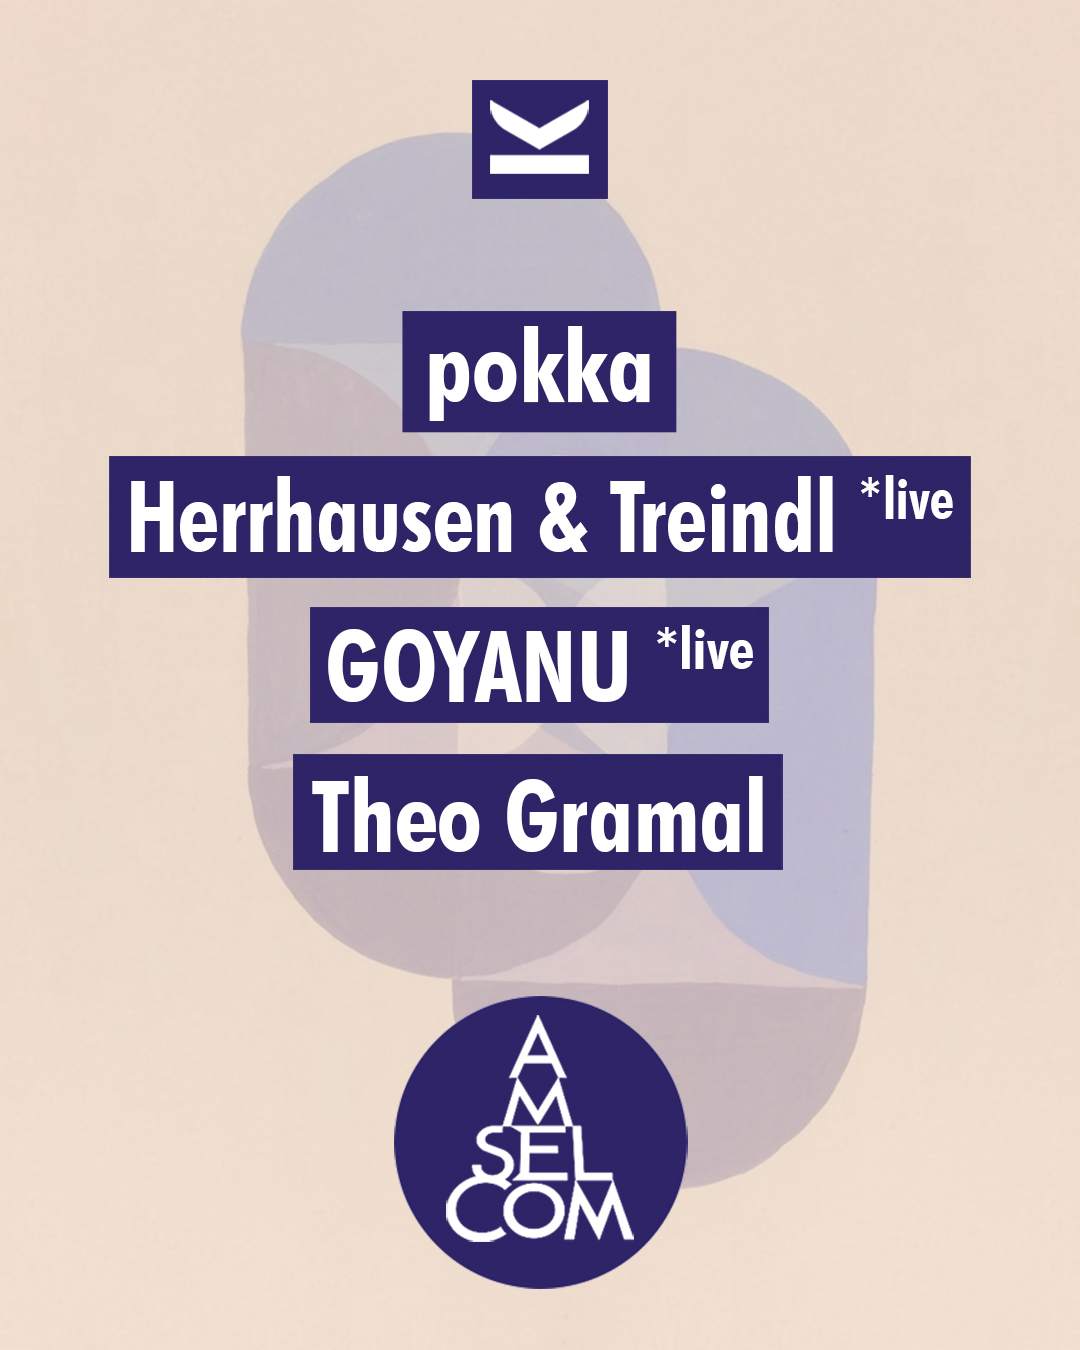 Amselcom x Klunkerkranich with GOYANU *live, Herrhausen & Treindl *live, Theo Gramal, pokka - フライヤー裏